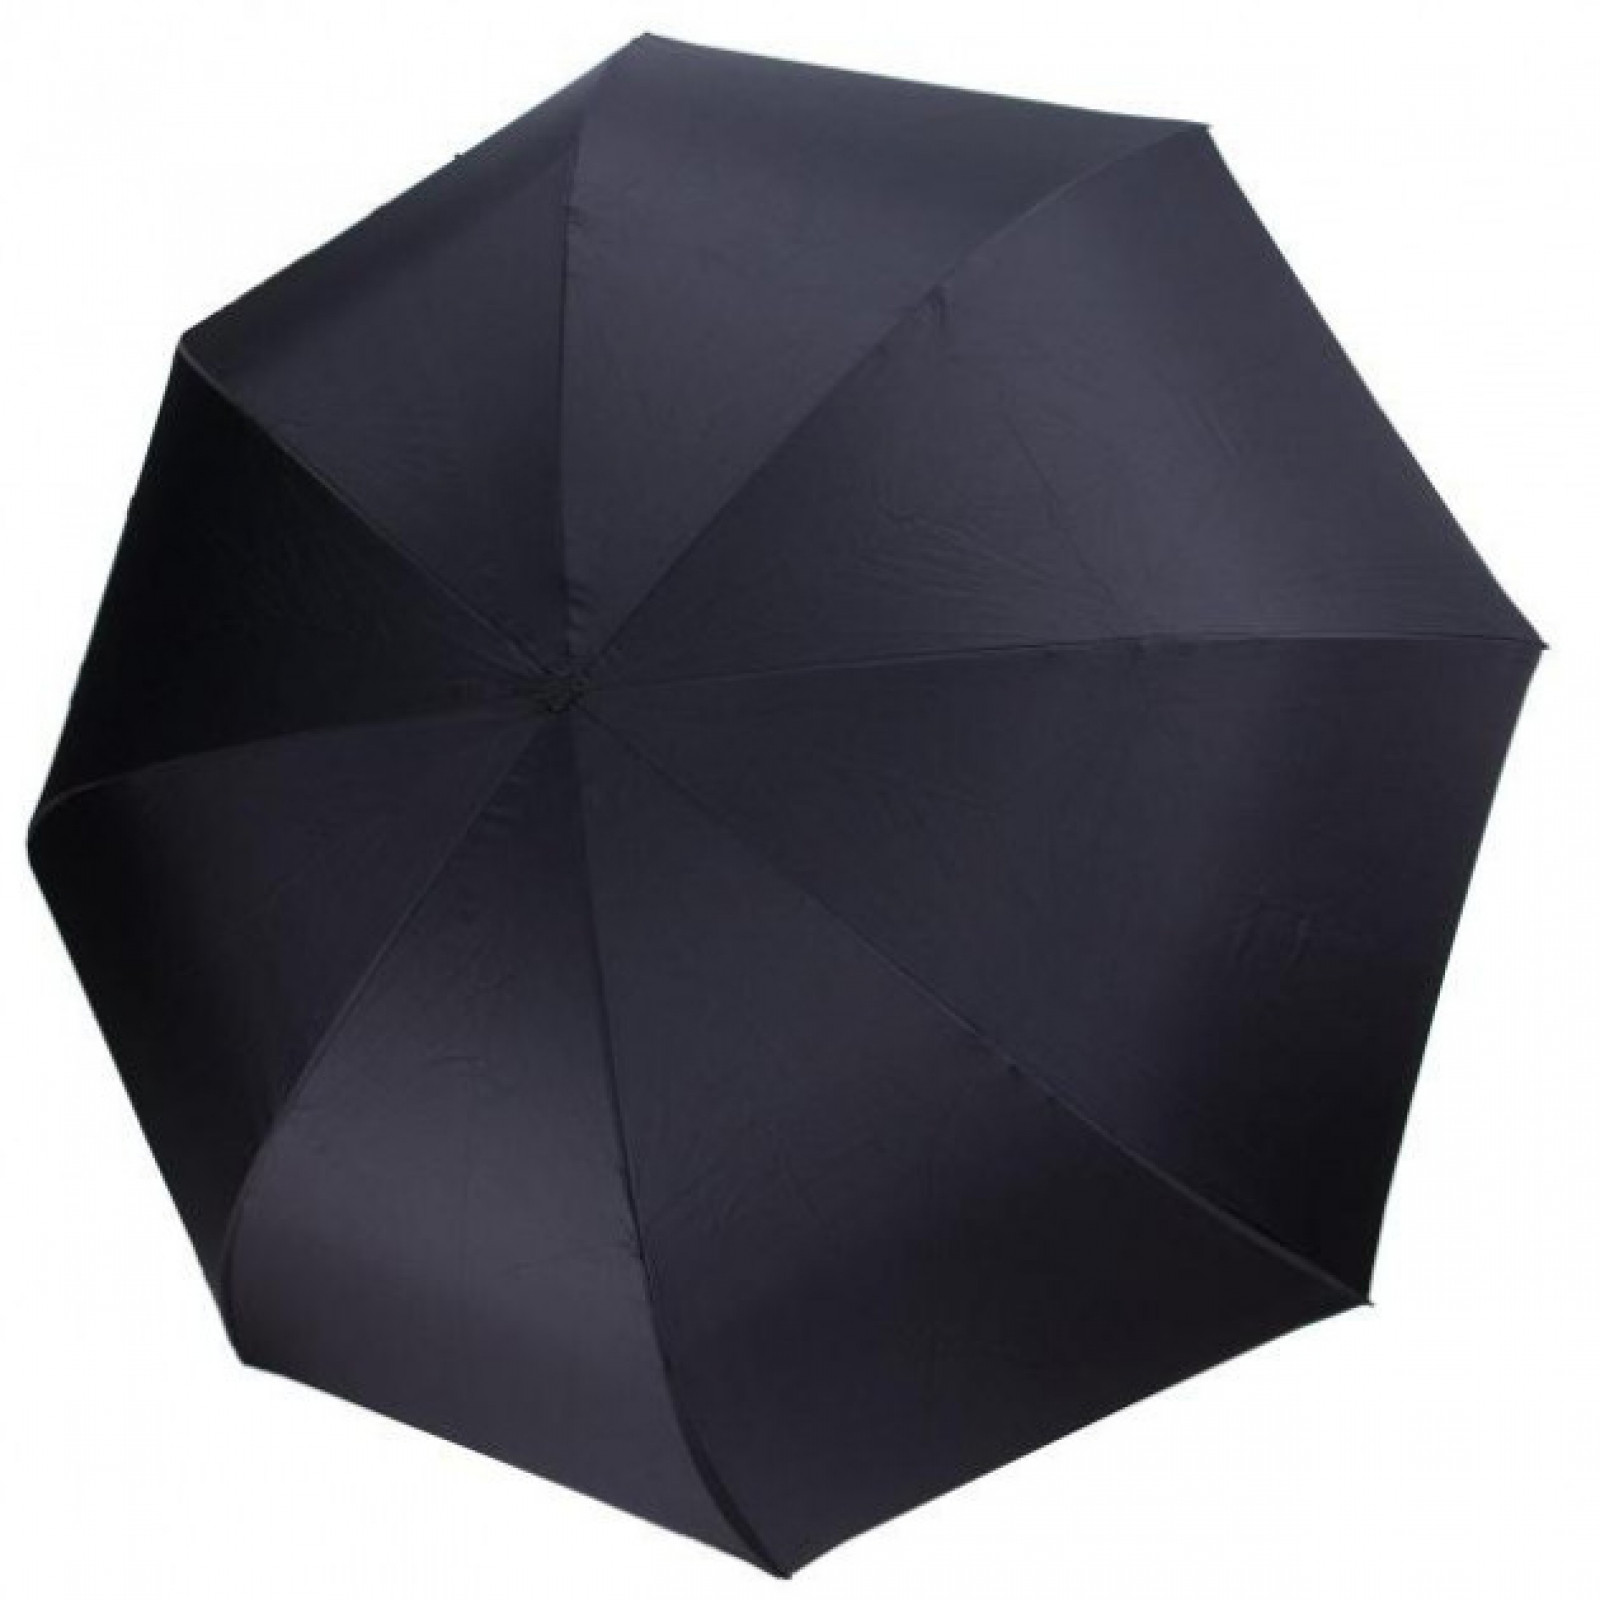 Зонт обратного сложения, антизонт, умный зонт, зонт наоборот Up Brella Жёлтый 151022